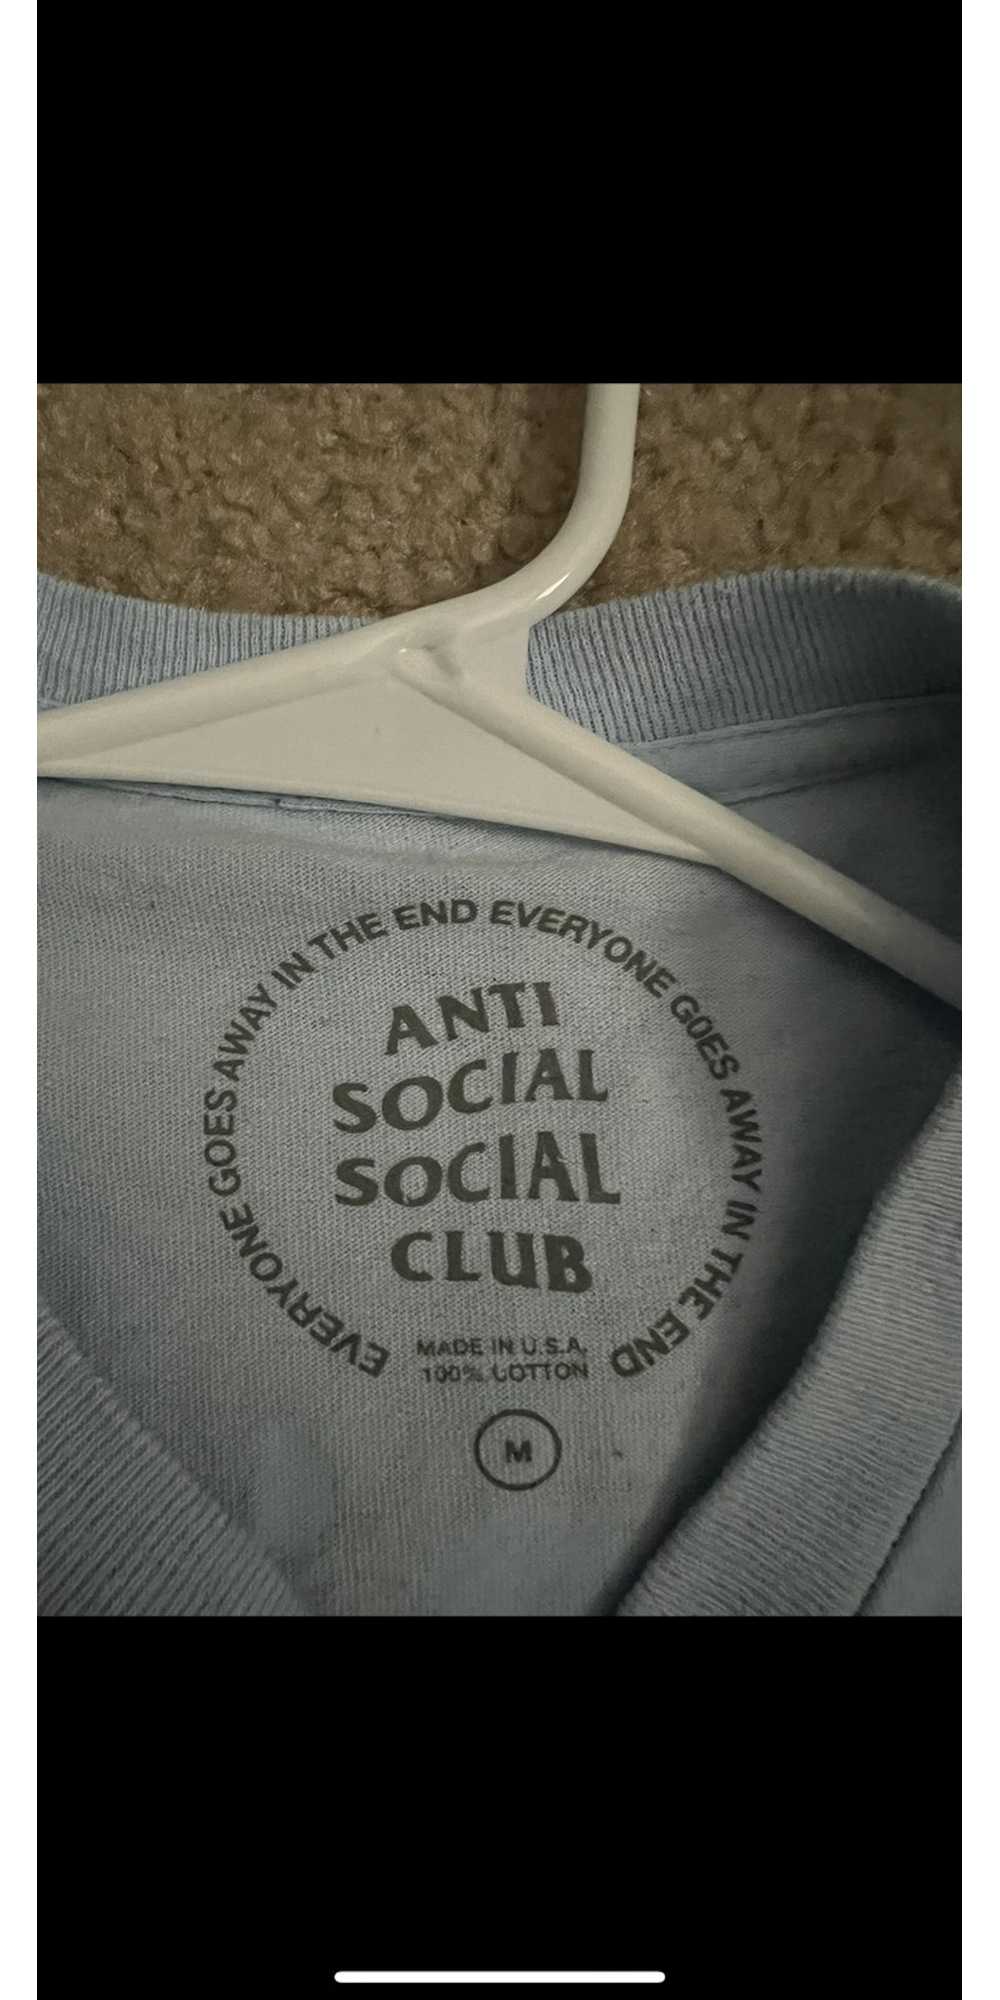 Anti Social Social Club anti social club t shirt - image 3